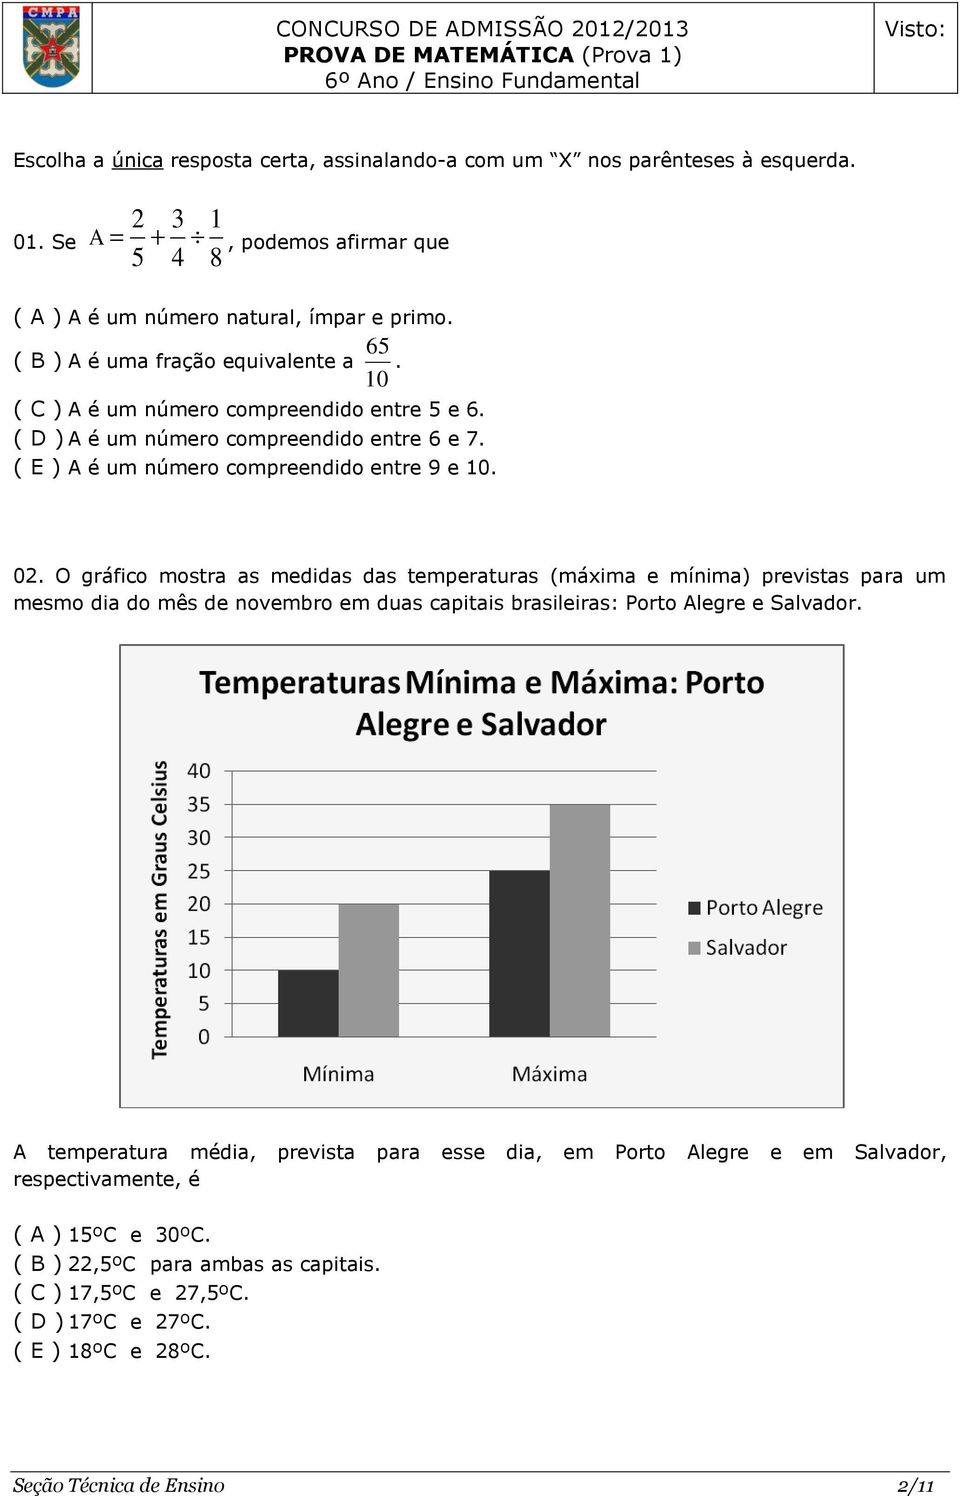 O gráfico mostra as medidas das temperaturas (máxima e mínima) previstas para um mesmo dia do mês de novembro em duas capitais brasileiras: Porto Alegre e Salvador.